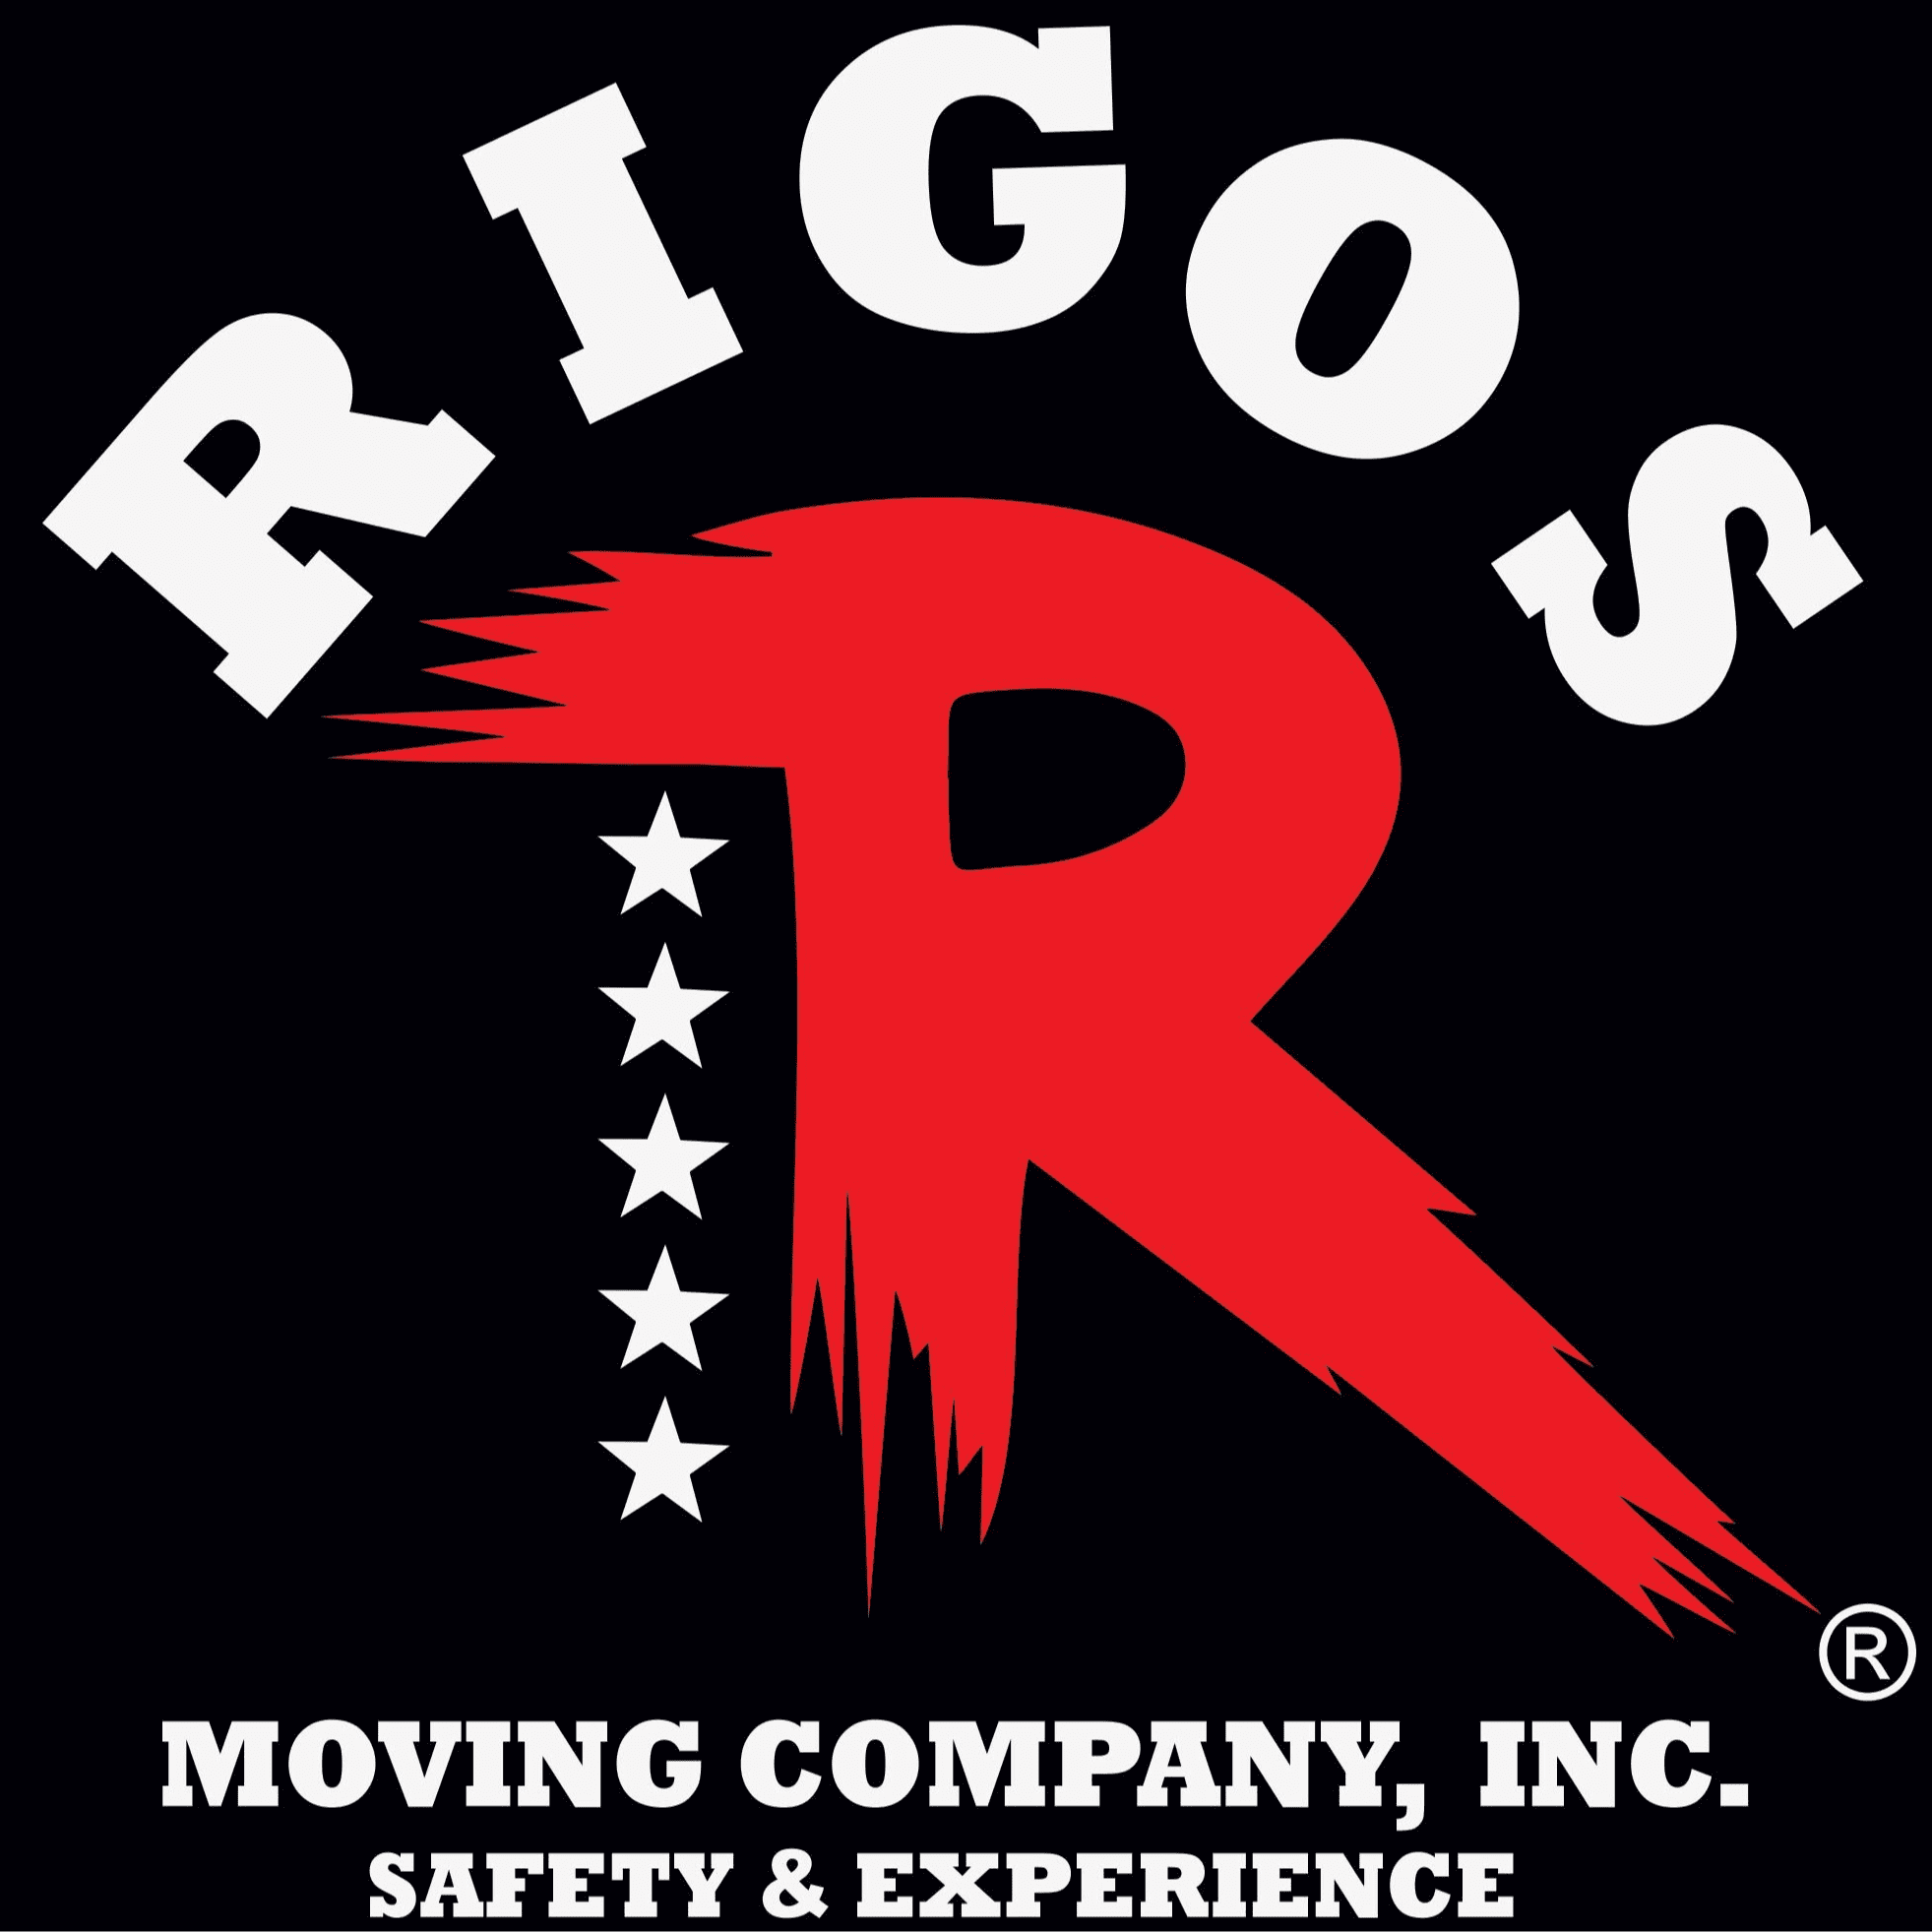 rigo's moving